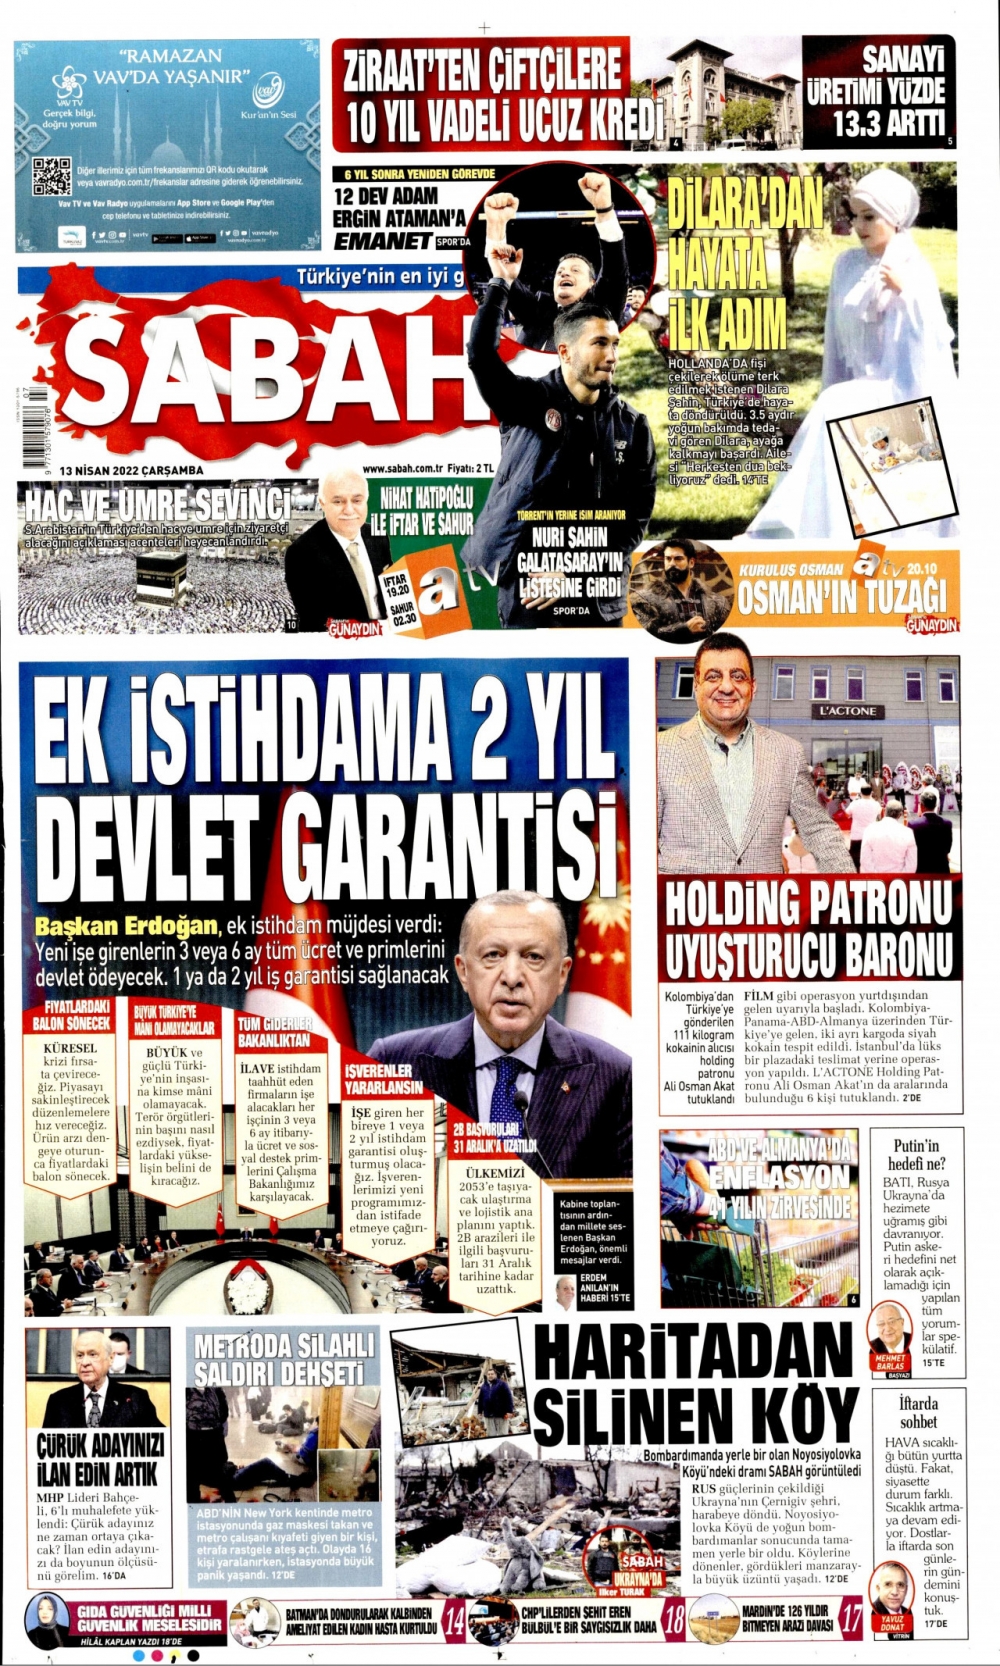 Günün Gazete Manşetleri 13 Nisan 2022 Gazeteler Ne Diyor? 2